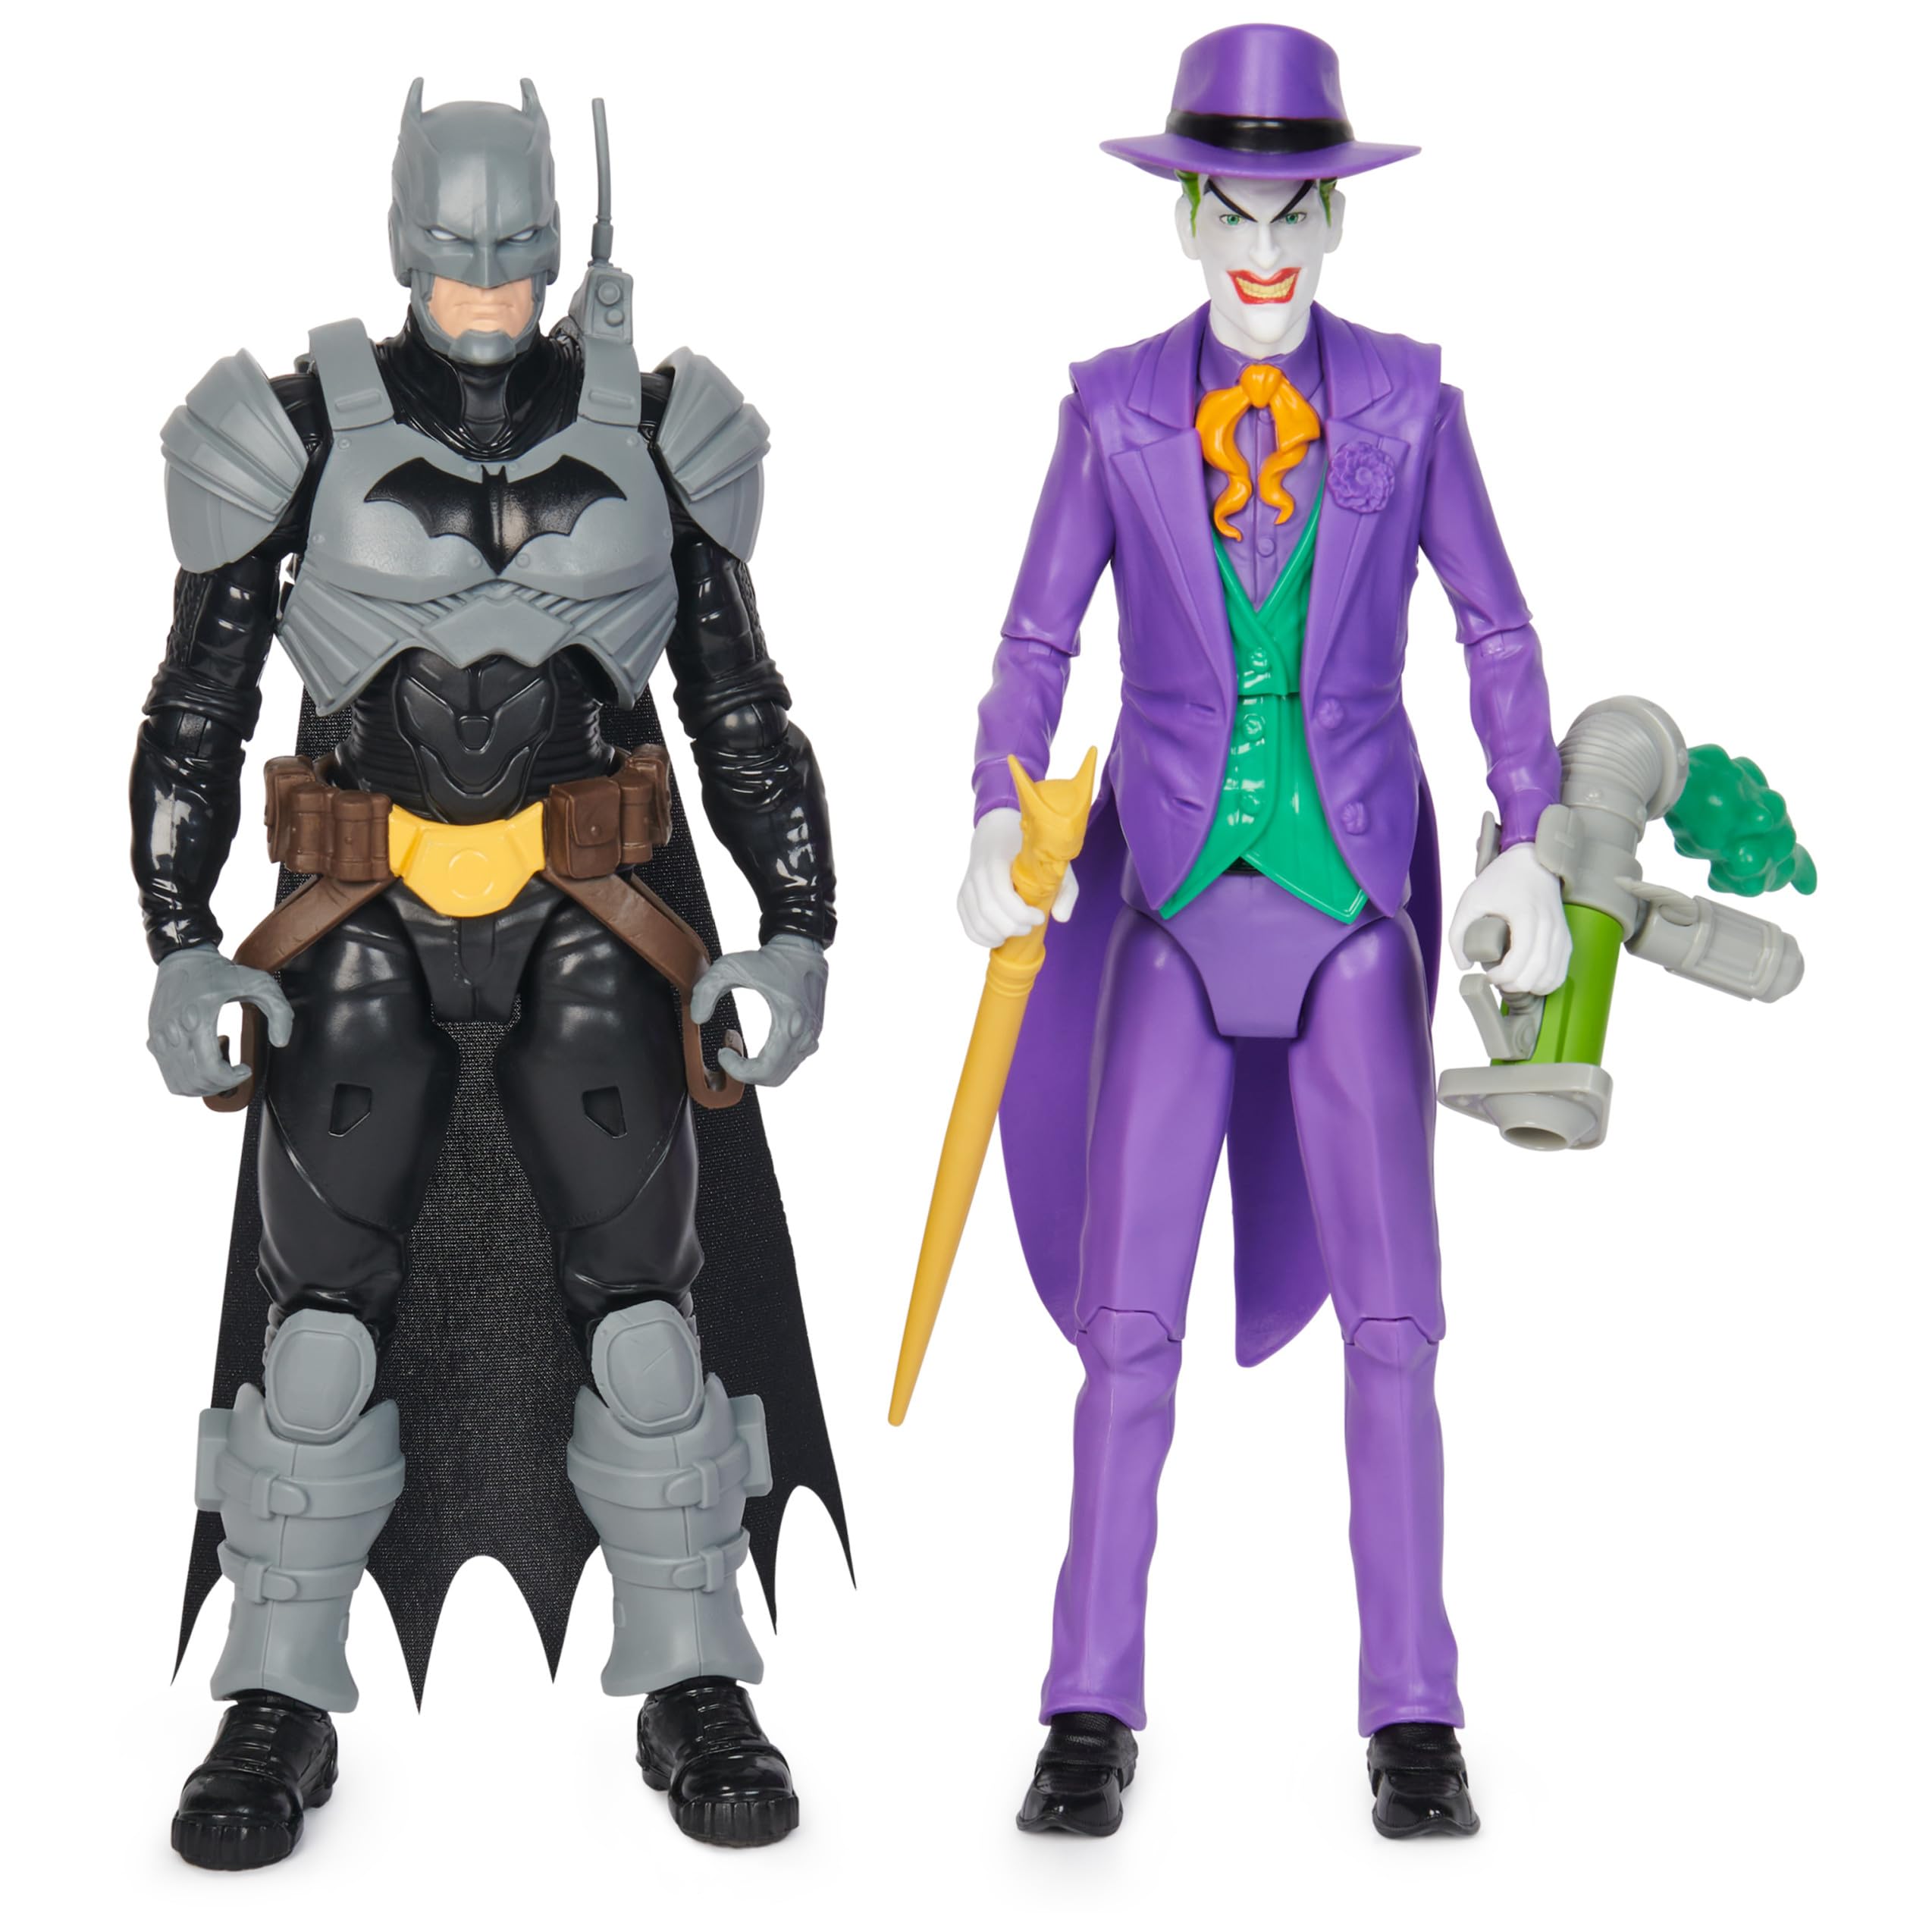 DC Comics, Batman Adventures, Batman vs The Joker Action Figures Set, 2 Figures, 12 Armor Accessories, 12-inch Super Hero Kids Toy for Boys & Girls